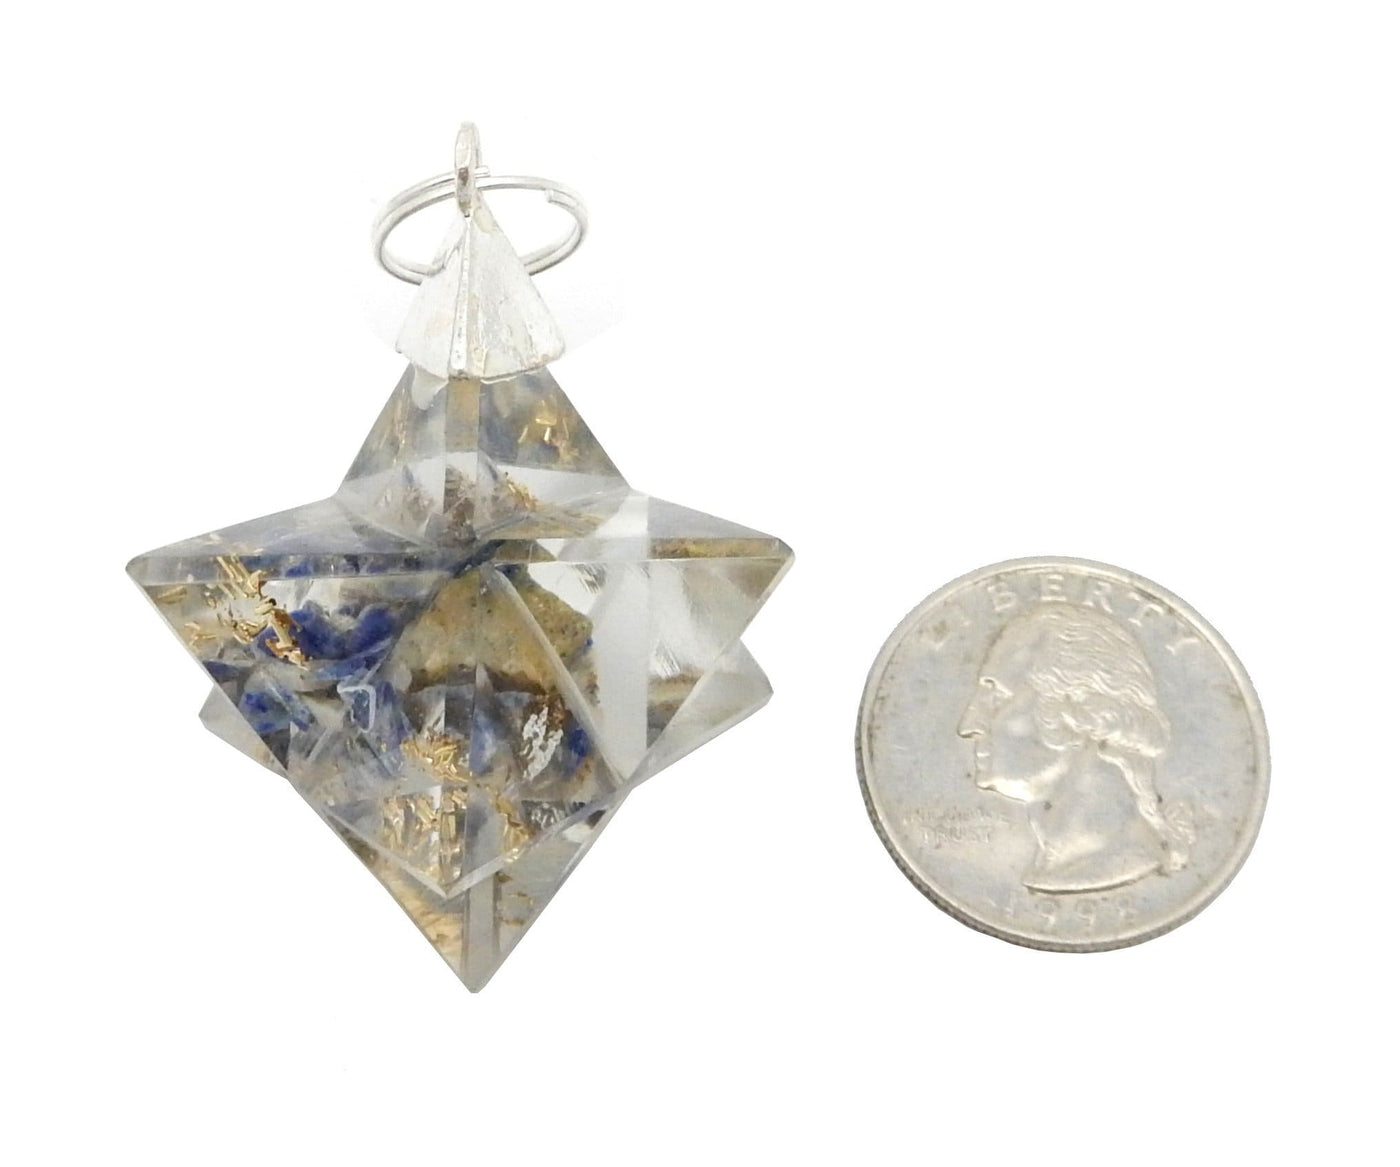 Merkaba - Merkaba Star Orgone Silver Toned Bail Pendant - one next to a quarter